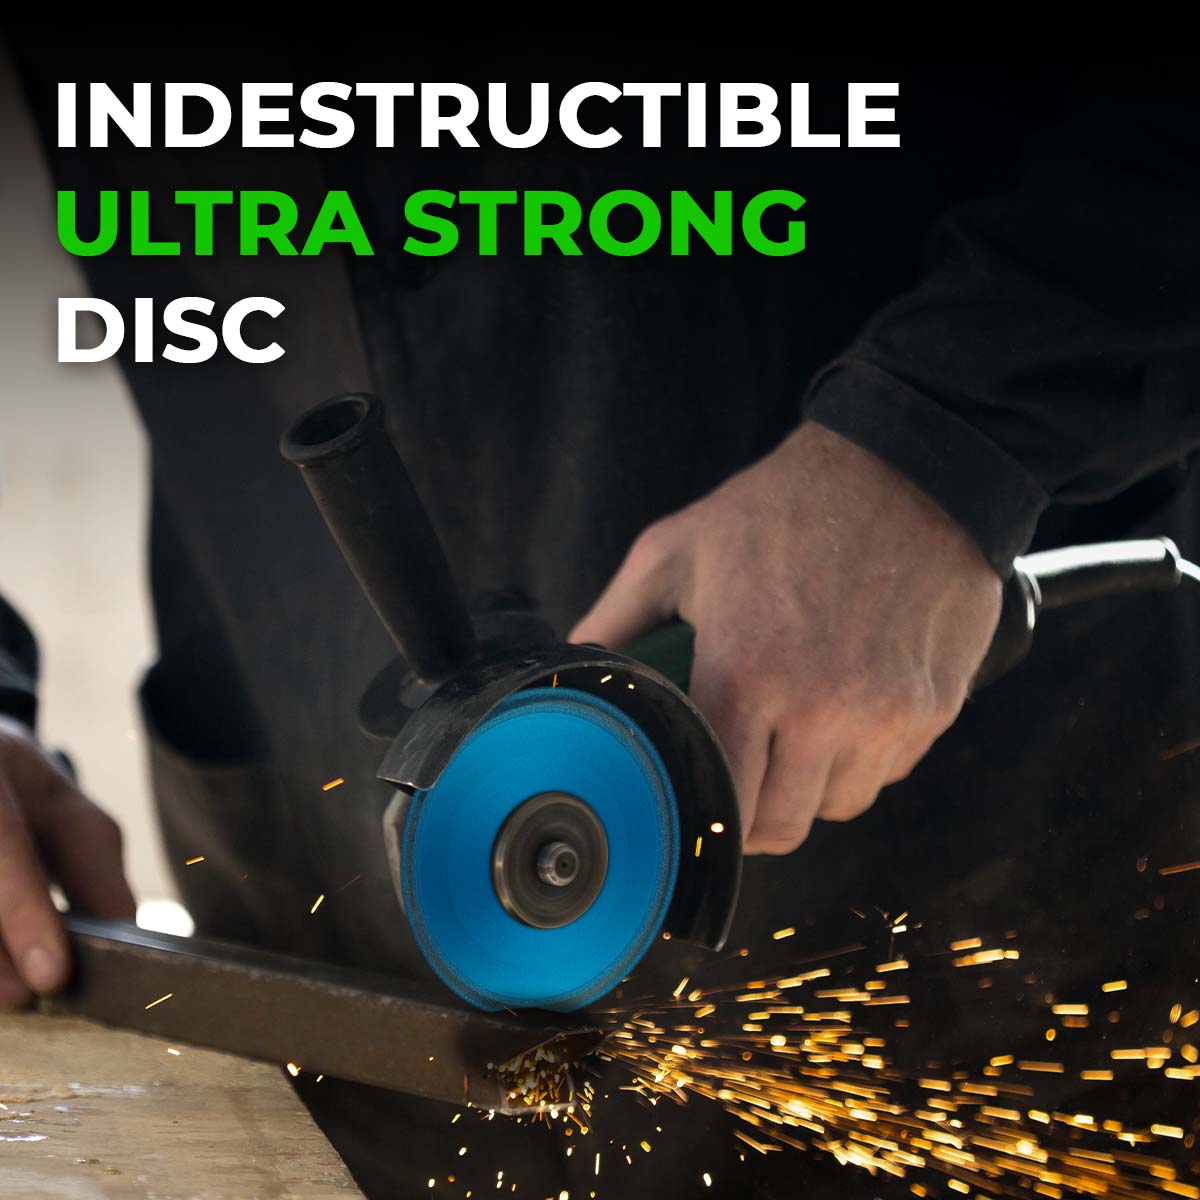 Indestructible Disc for Grinder, Indestructible Cutting Disc, 4inch x  1/25inch x 4/5inch Diamond Cutting